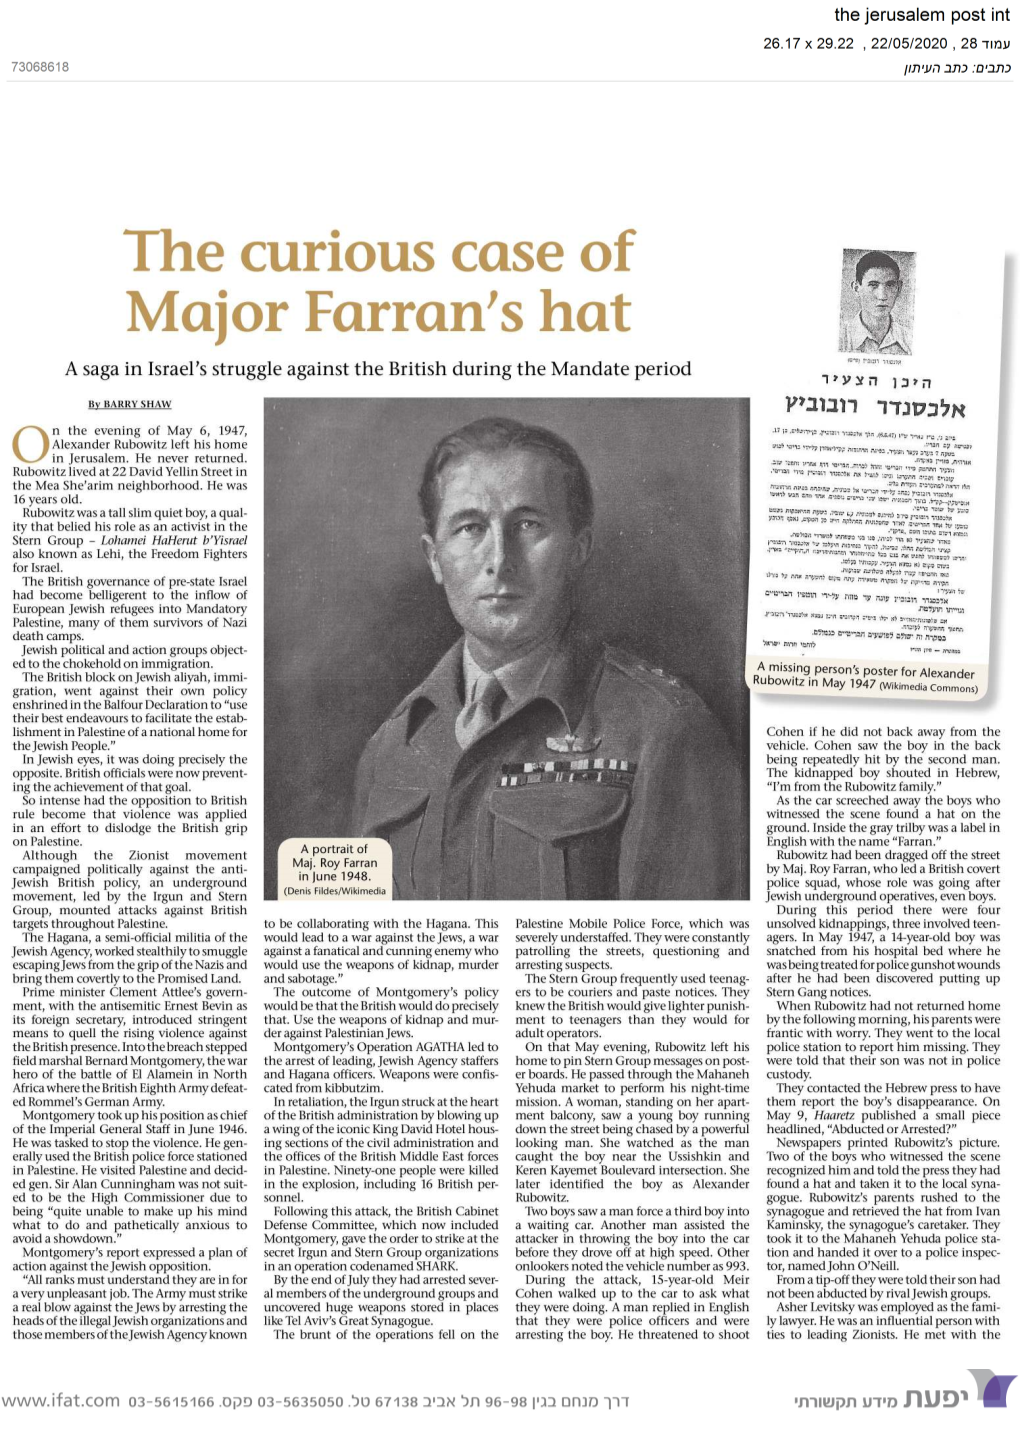 The Curious Case of Major Farran's